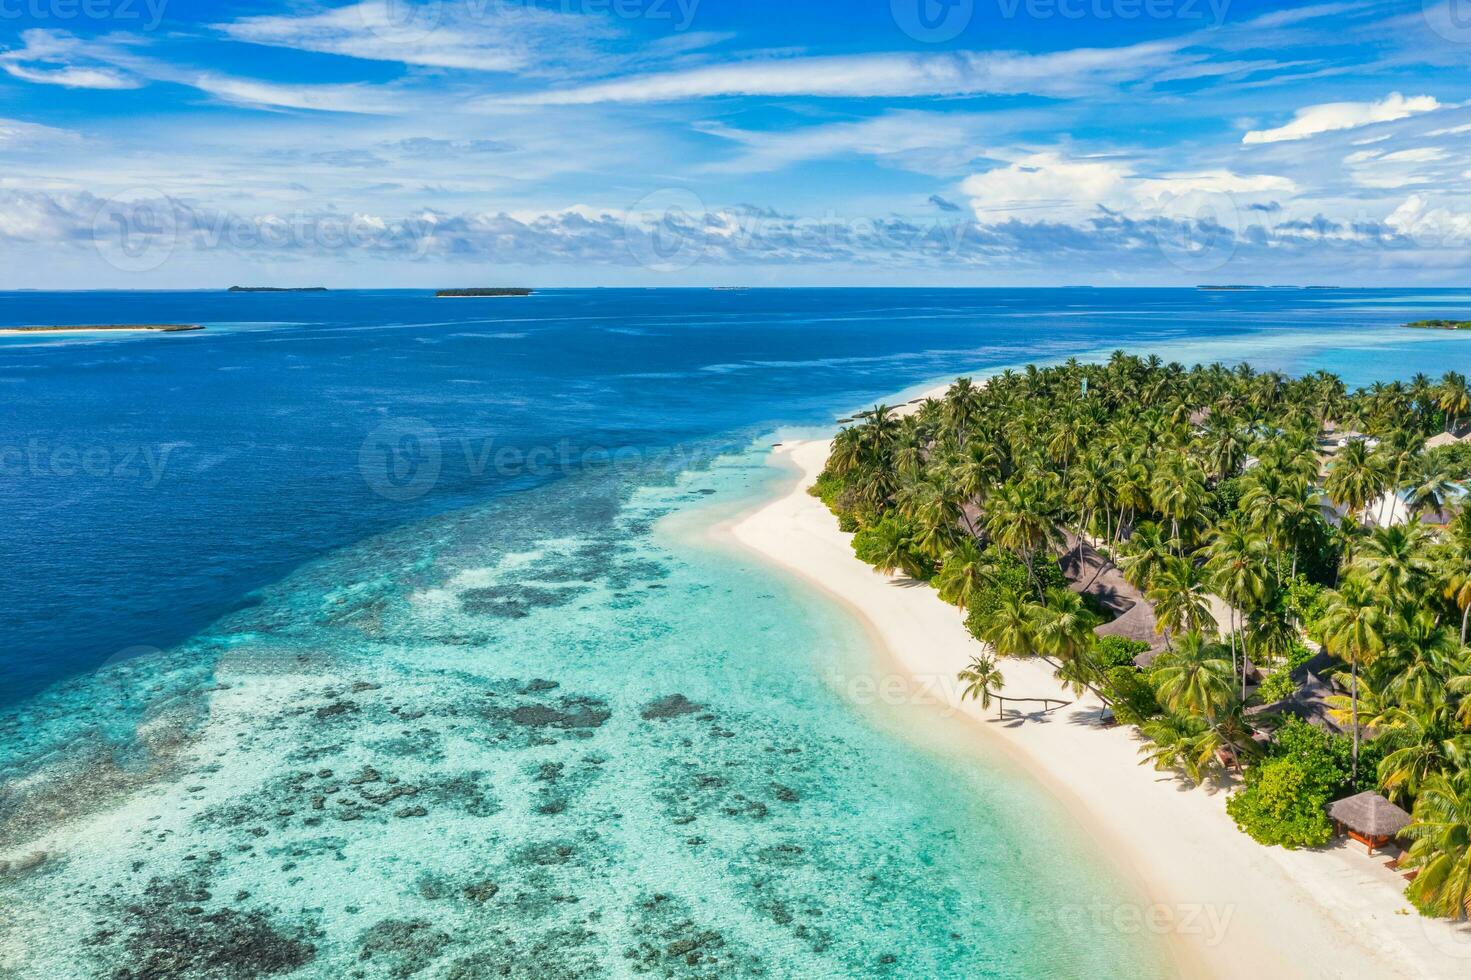 increíble playa de la isla. maldivas desde vista aérea tranquilo paisaje tropical junto al mar con palmeras en la playa de arena blanca. costa de naturaleza exótica, isla de resort de lujo. hermoso turismo de vacaciones de verano foto